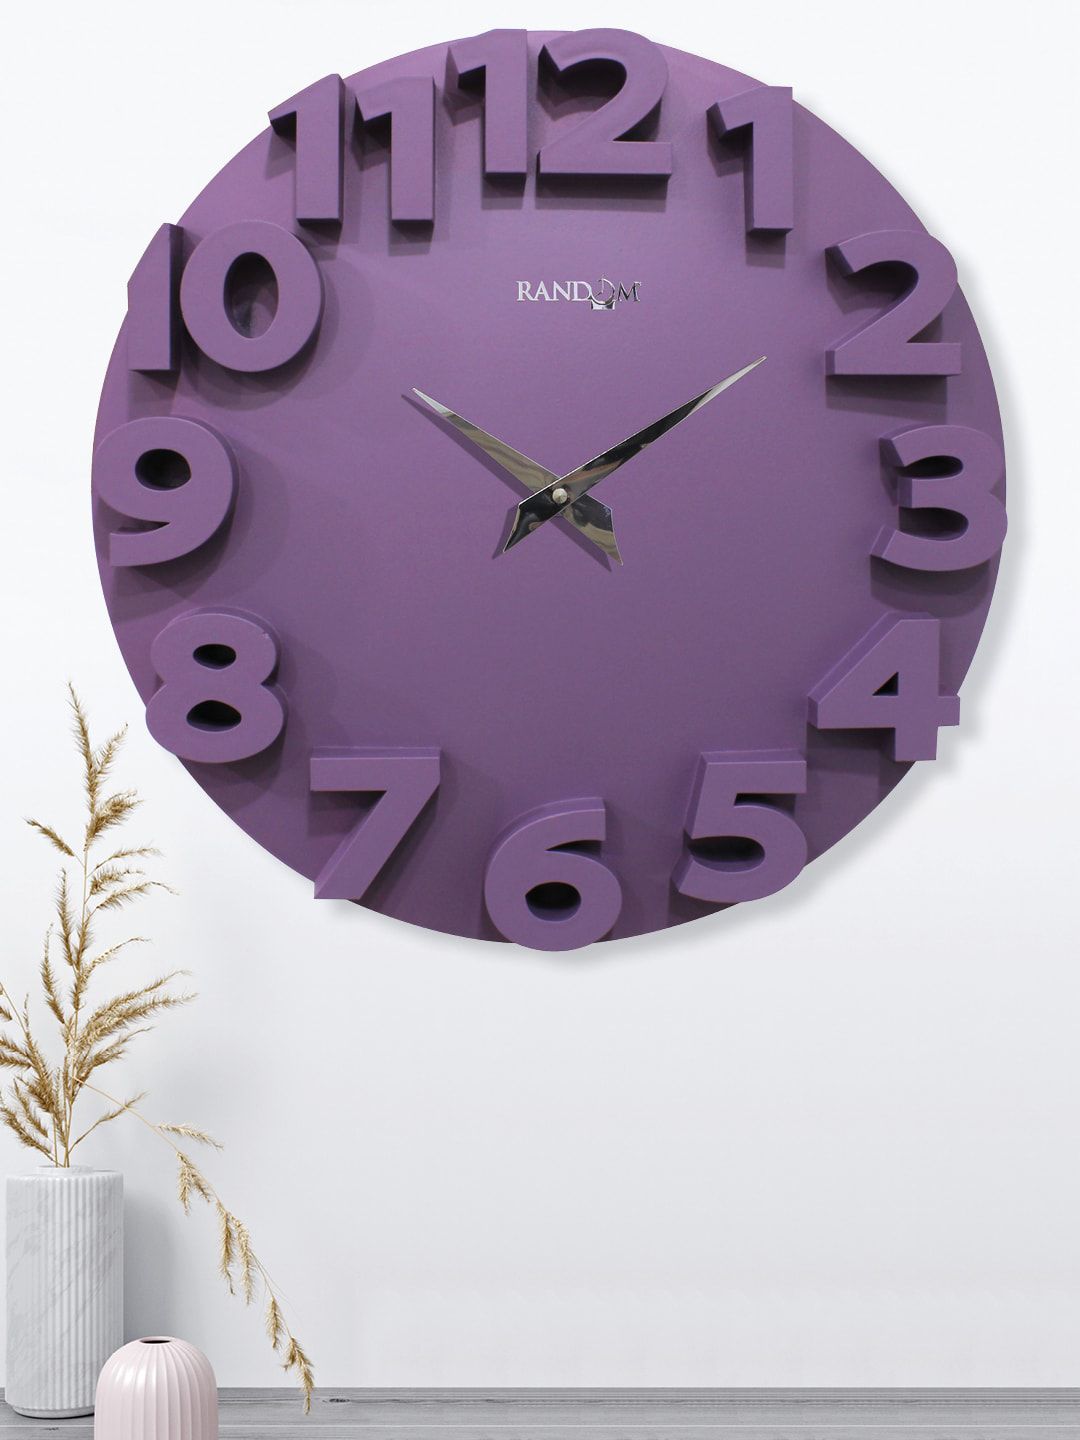 RANDOM Purple Contemporary Wall Clock Price in India